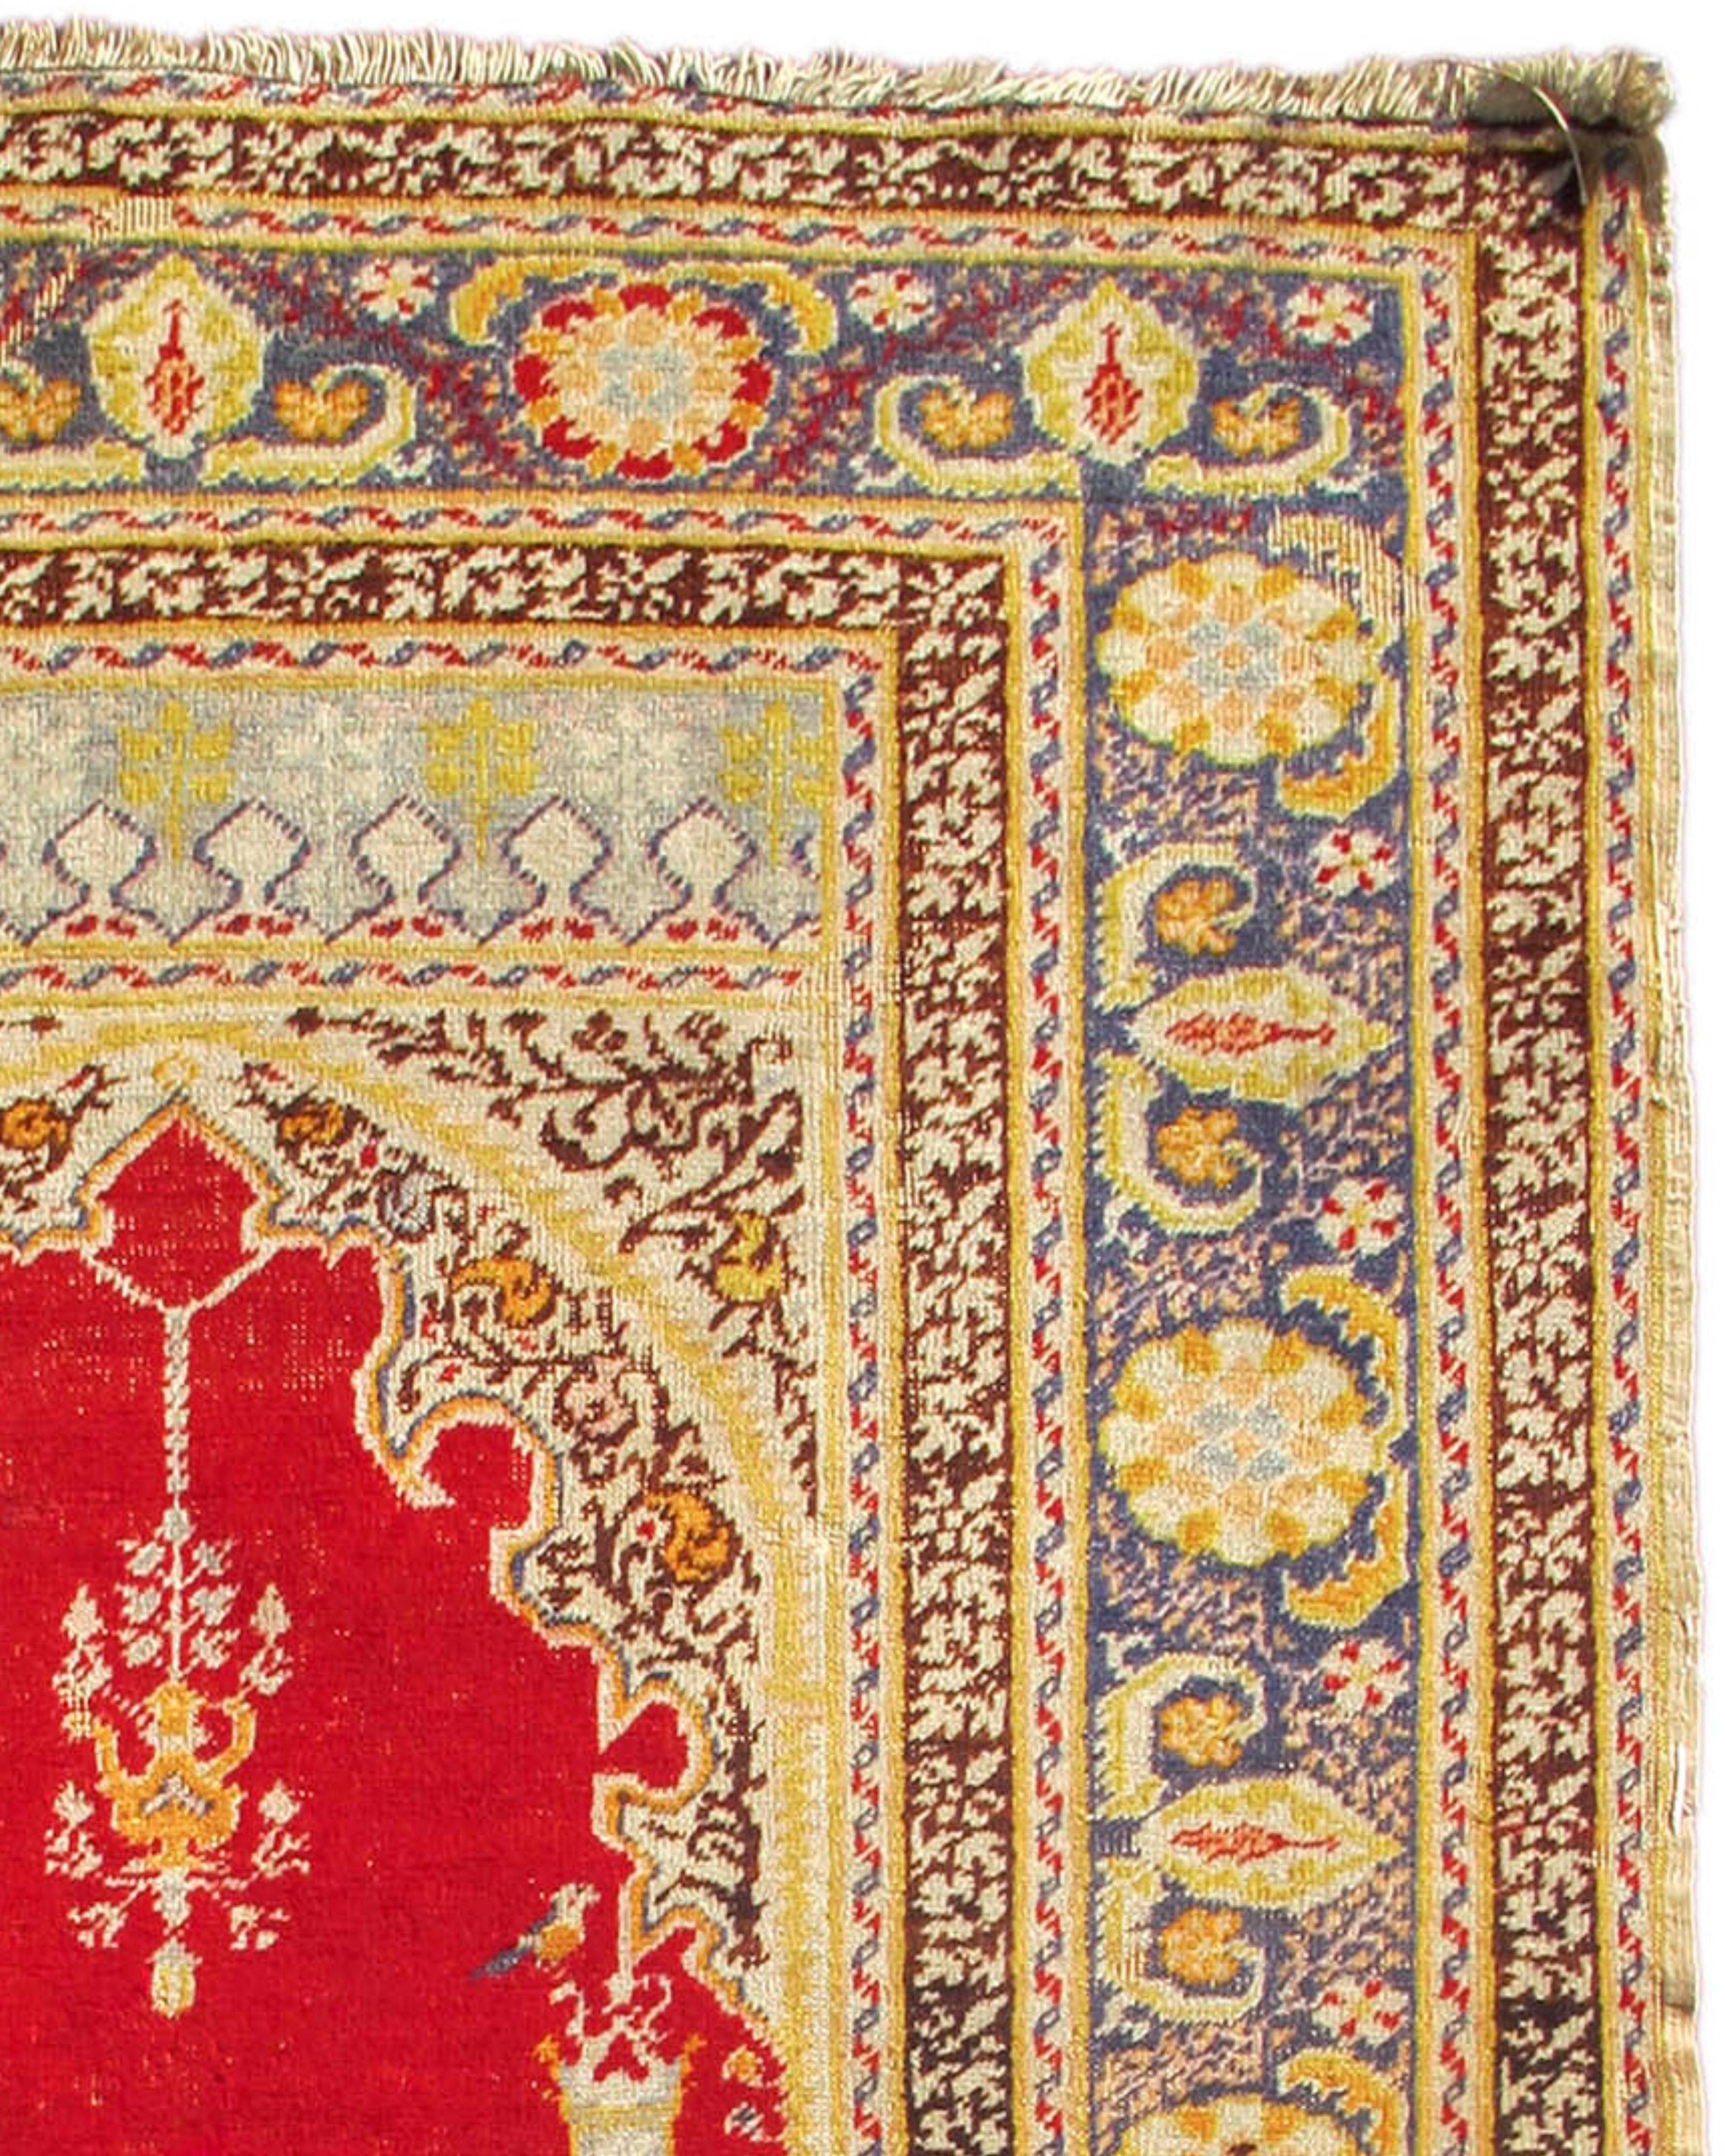 Ancien tapis de prière turc Ghiordes, fin du 19e siècle

Les tapis de prière de Townes sont un type de tapis de prière originaire de la ville de Townes, qui se trouve aujourd'hui en Turquie. Ils sont connus pour leurs niches de prière angulaires et